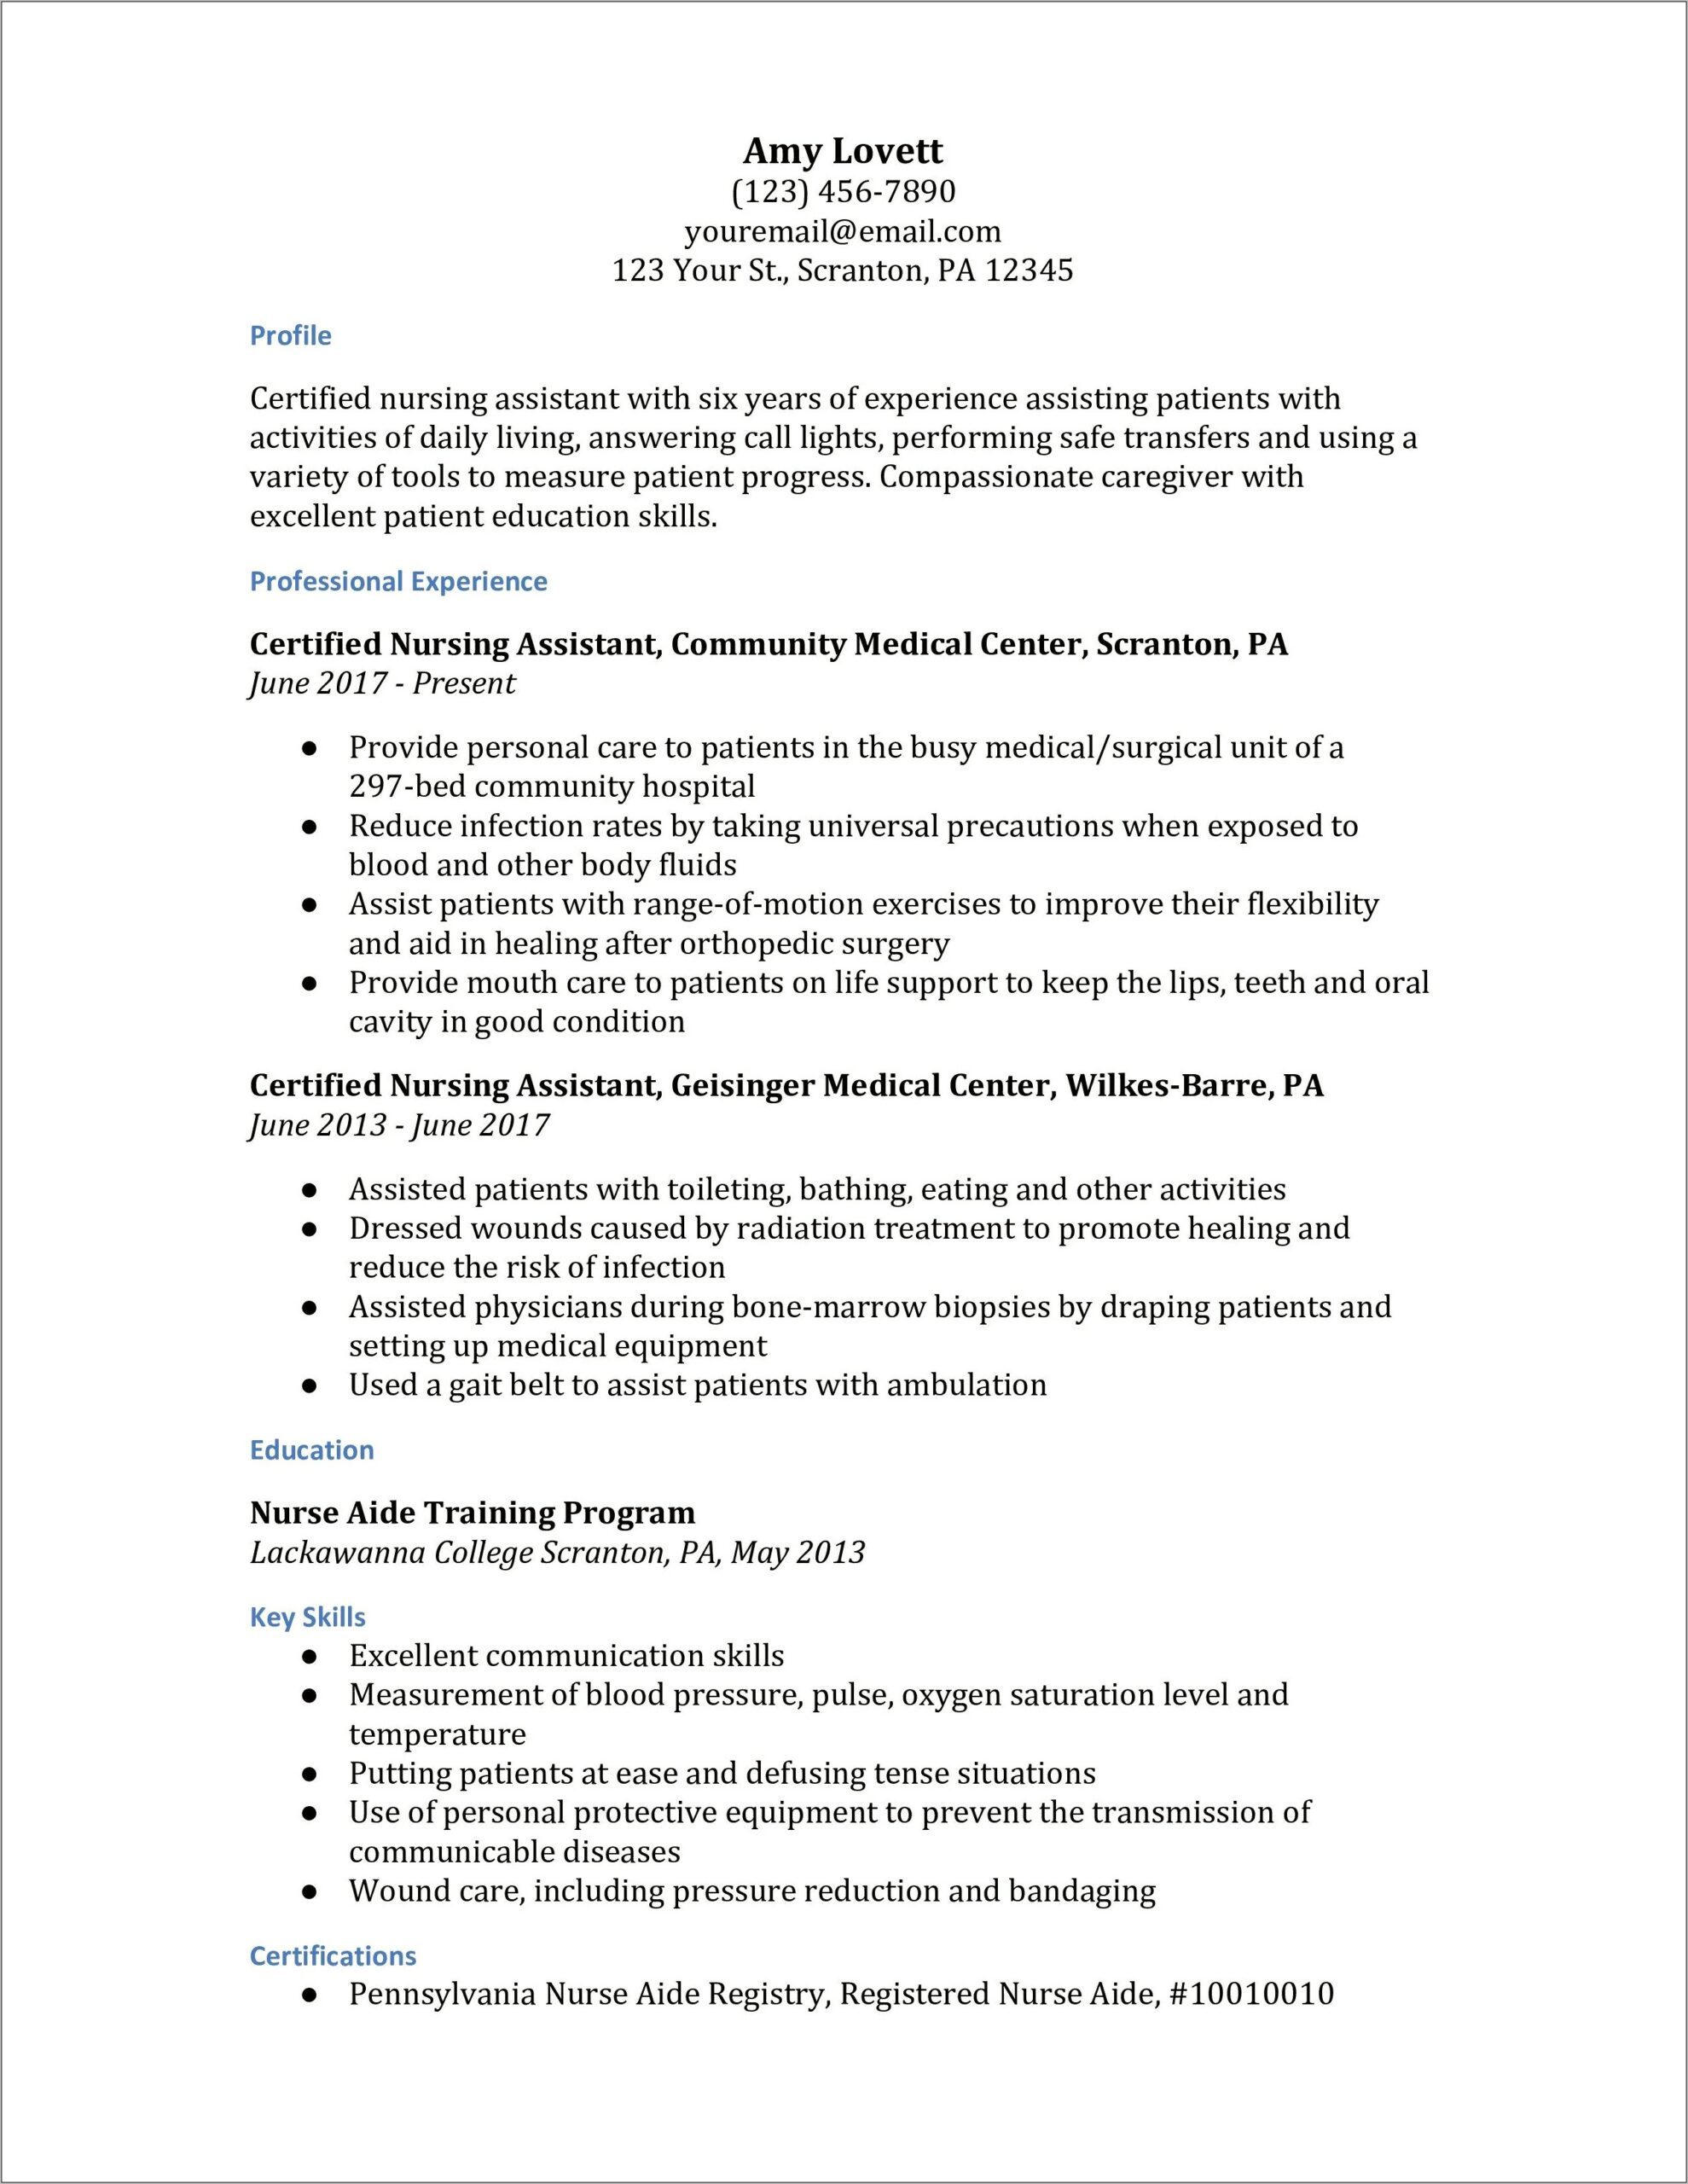 Job Description For Nursing Assistant For Resume